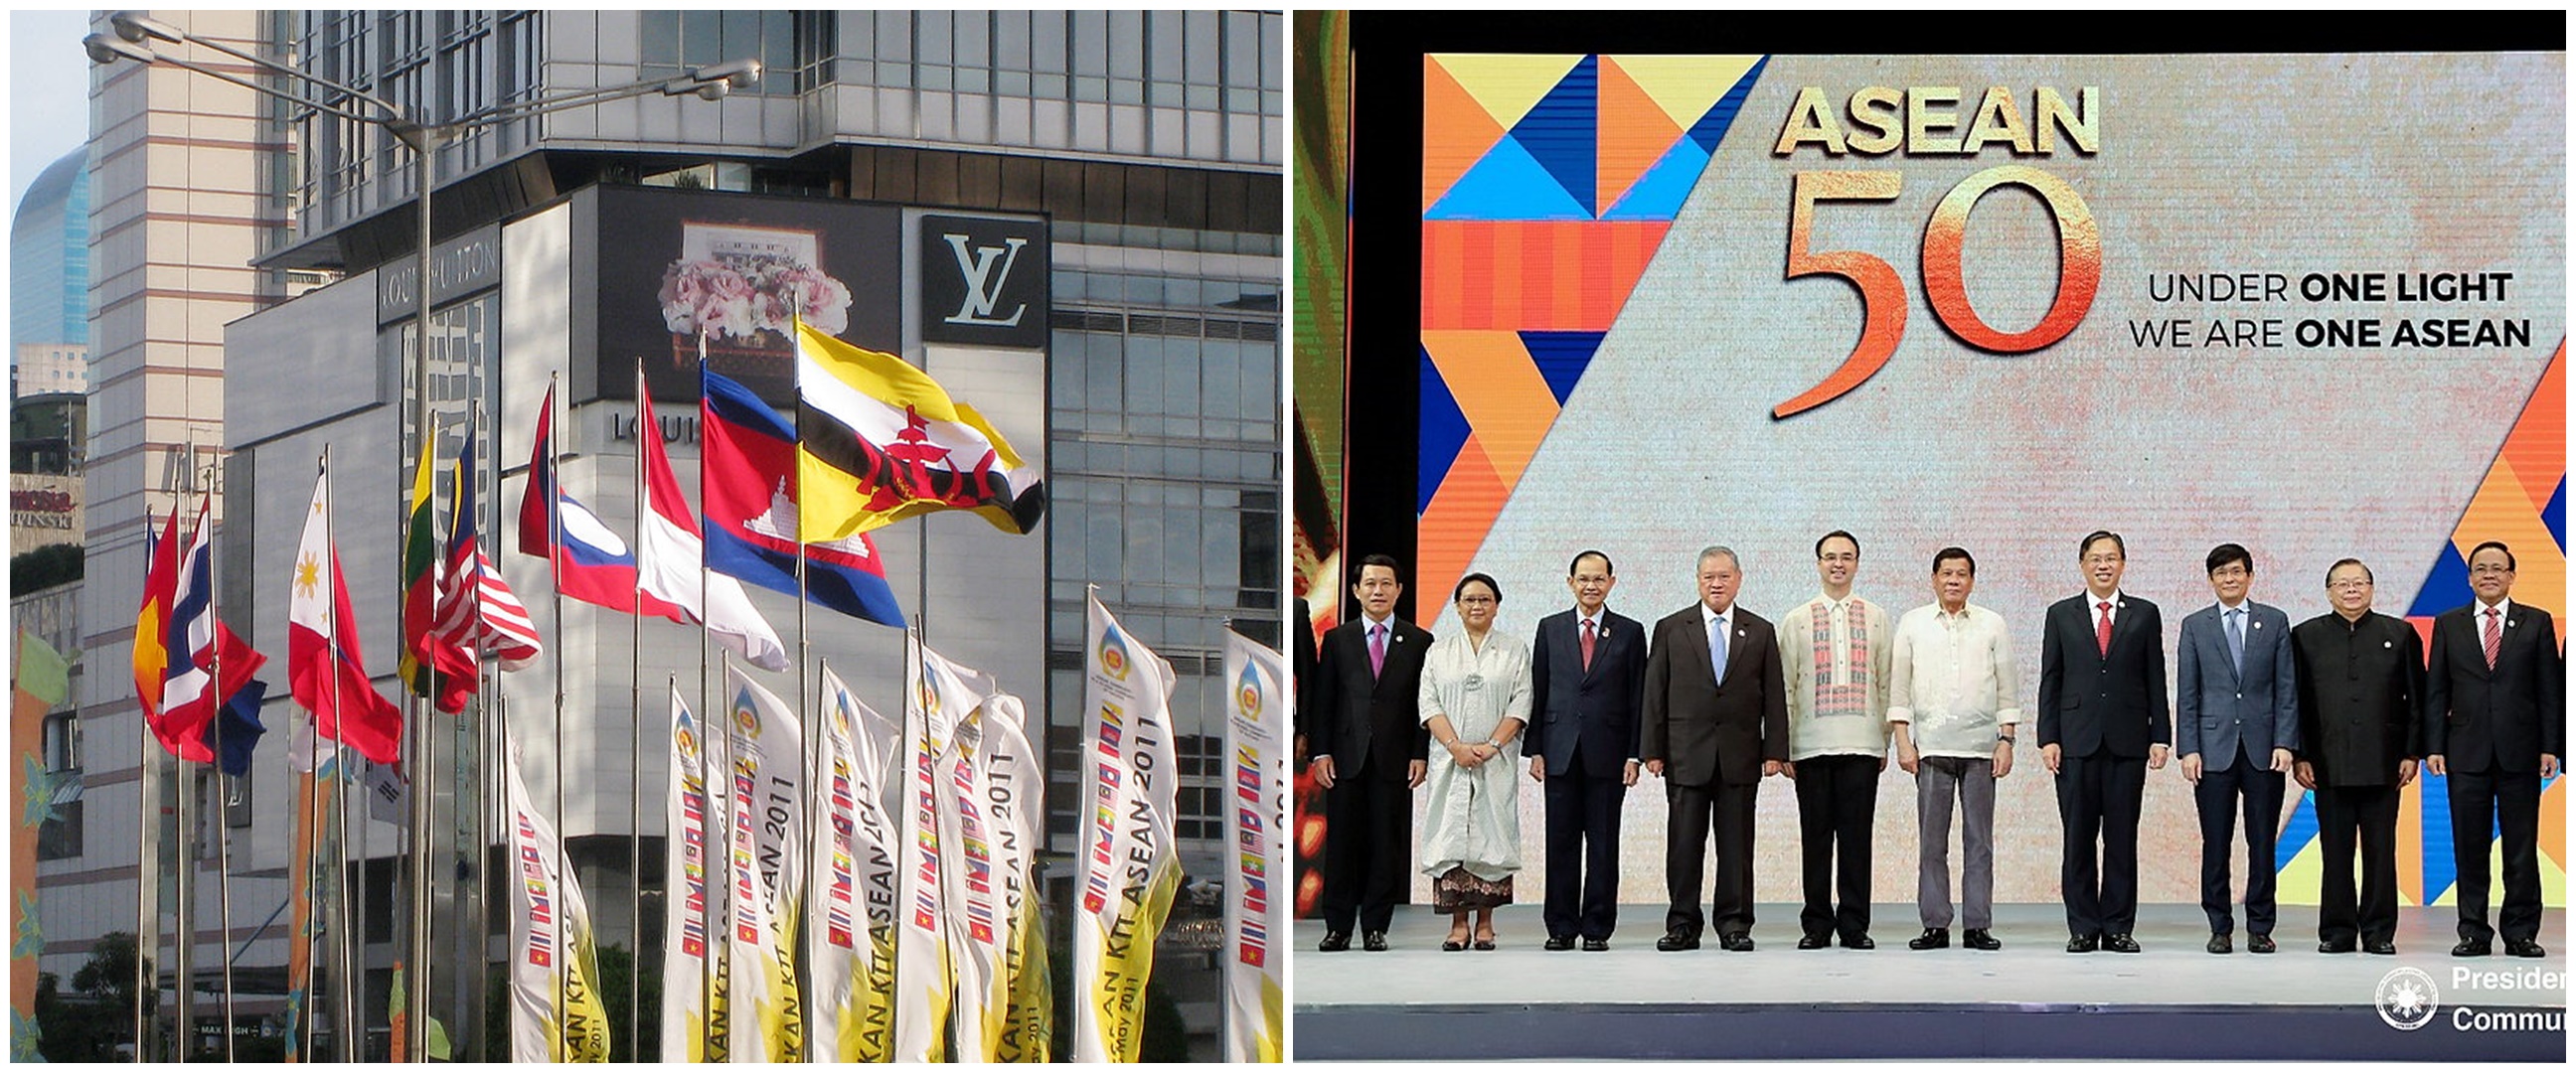 Pengertian ASEAN adalah, kenali sejarah, tujuan, dan negara anggotanya